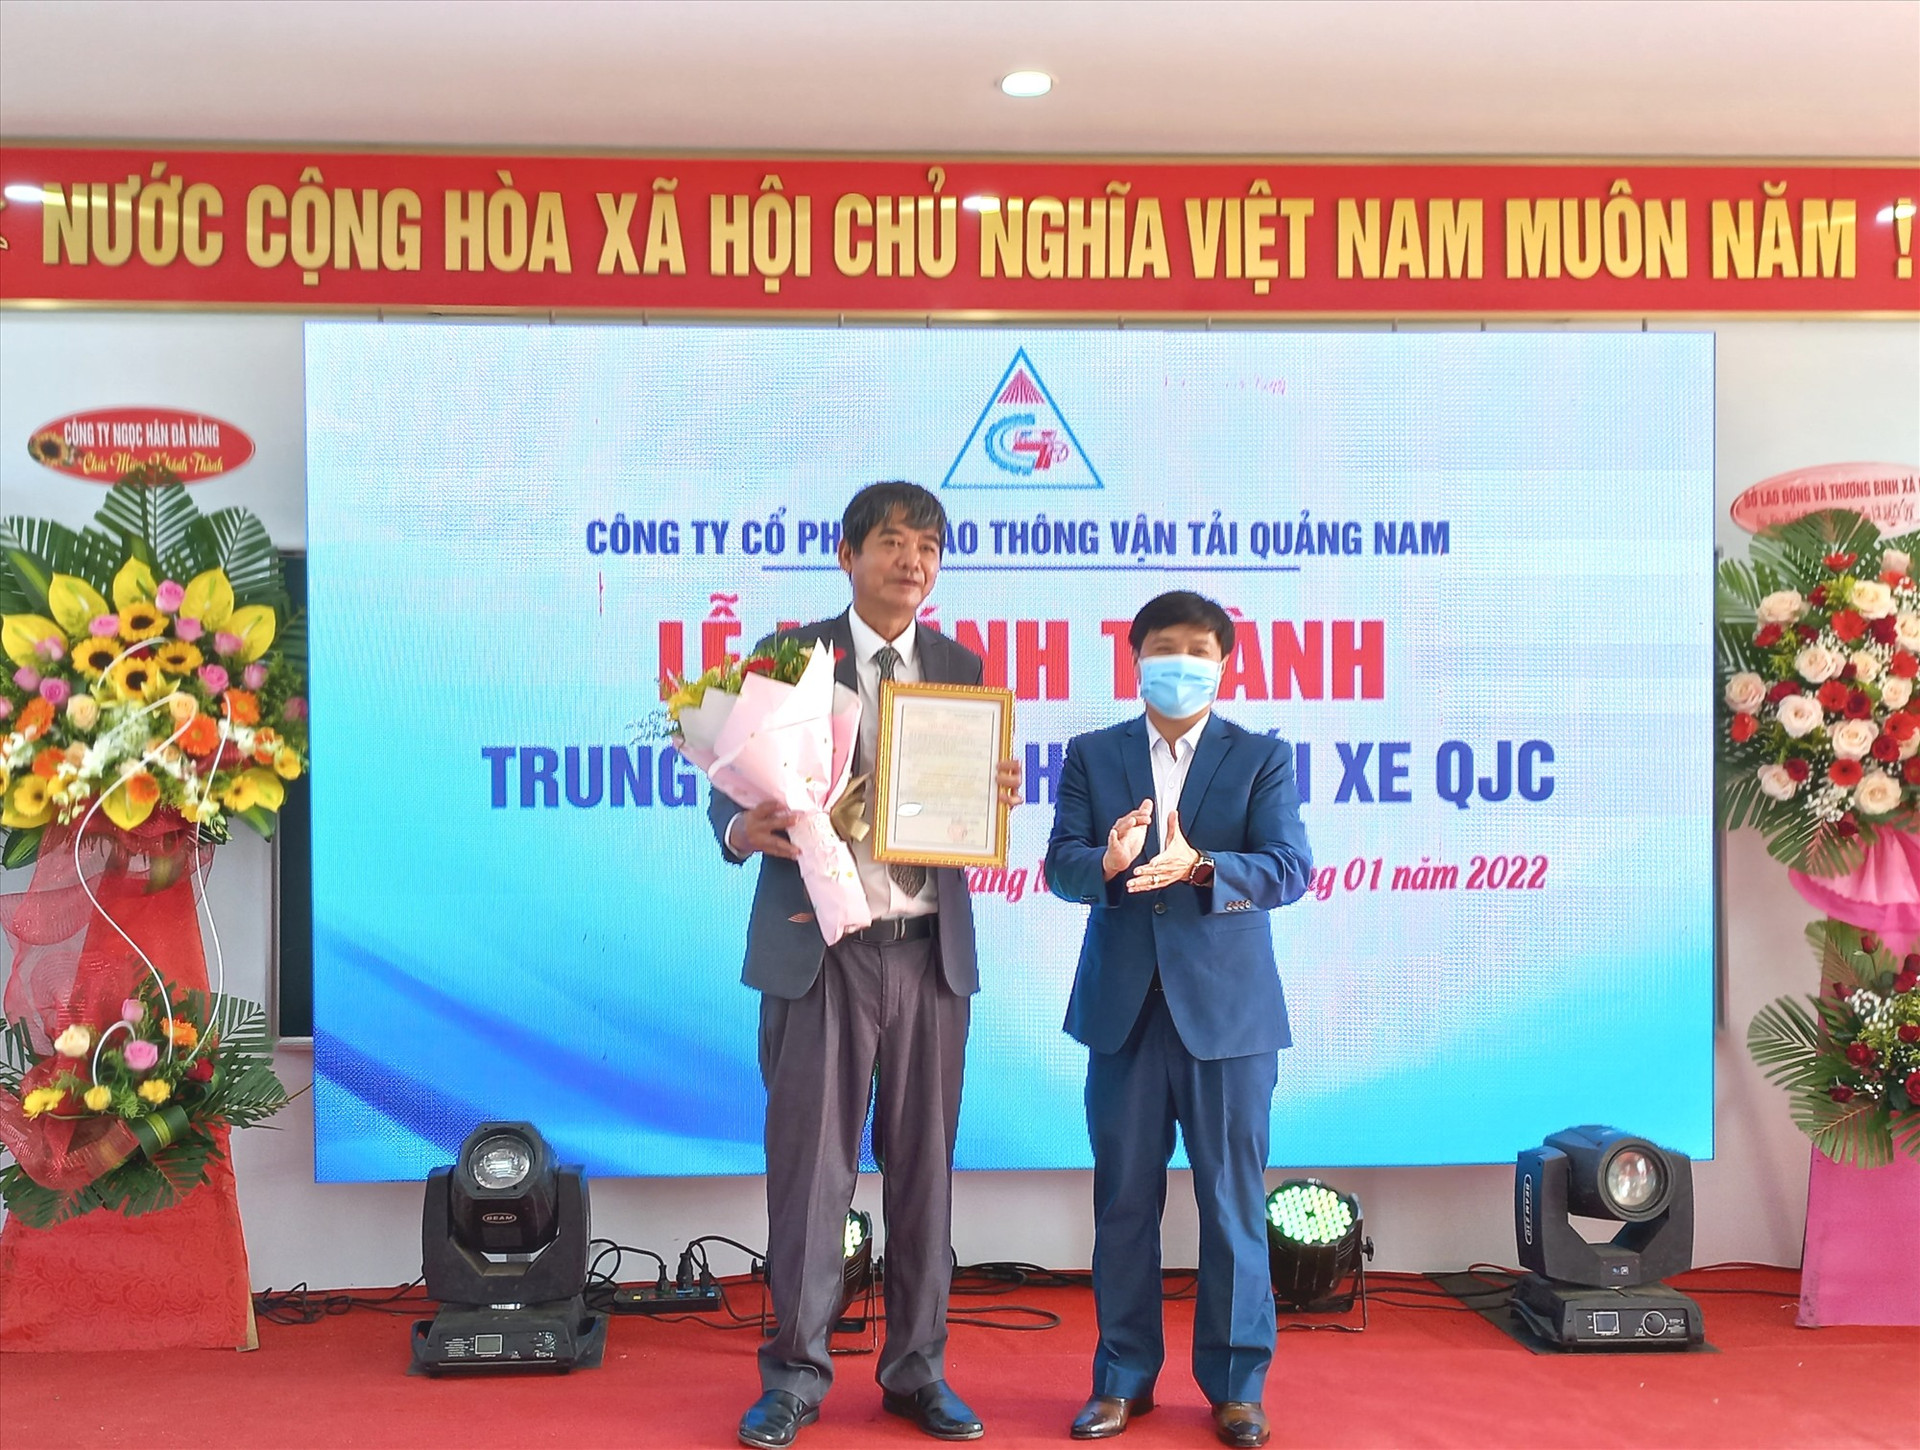 Trao giấy chứng nhận đủ điều kiện hoạt động SHLX do Tổng Cục đường bộ Việt Nam cấp cho trung tâm. Ảnh: CT